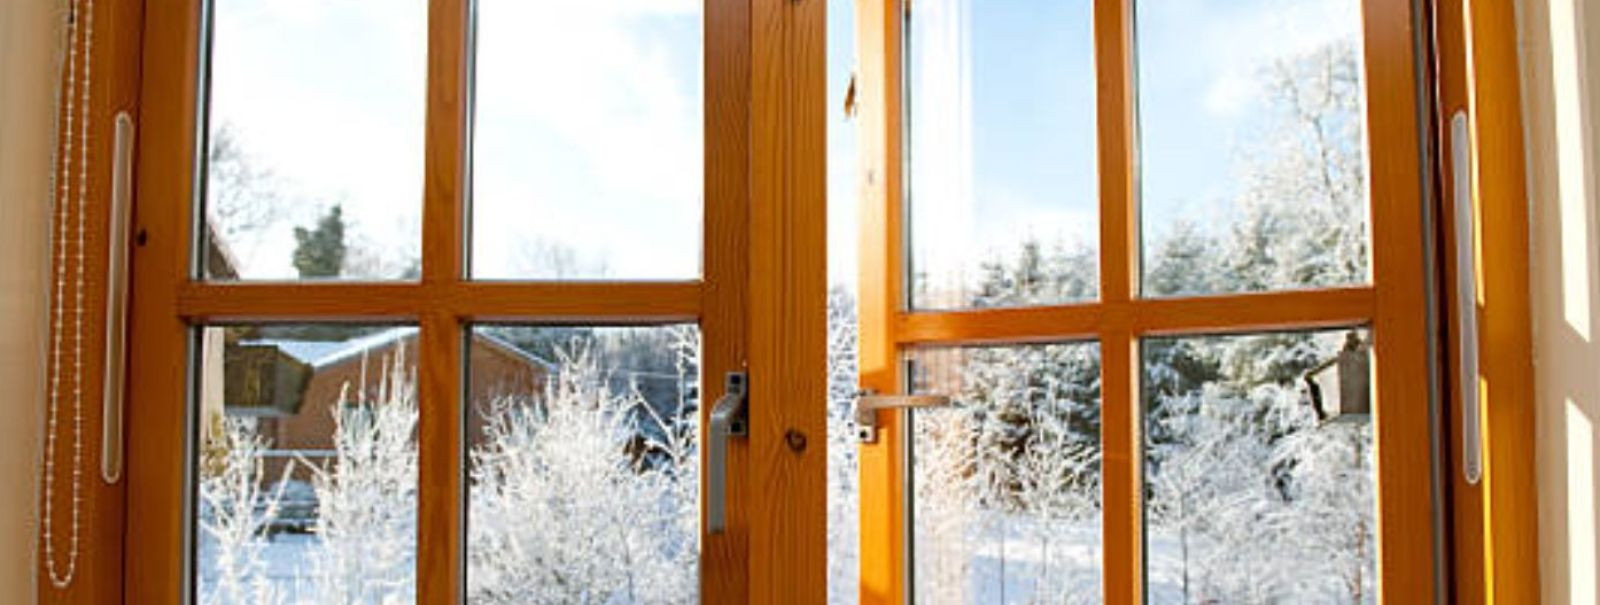 Plastik- ja puitaknad on kaks populaarset aknatüüpi, mida kasutatakse nii uutes kui ka renoveeritud hoonetes. Kuigi mõlemad pakuvad head soojapidavust ja heliis